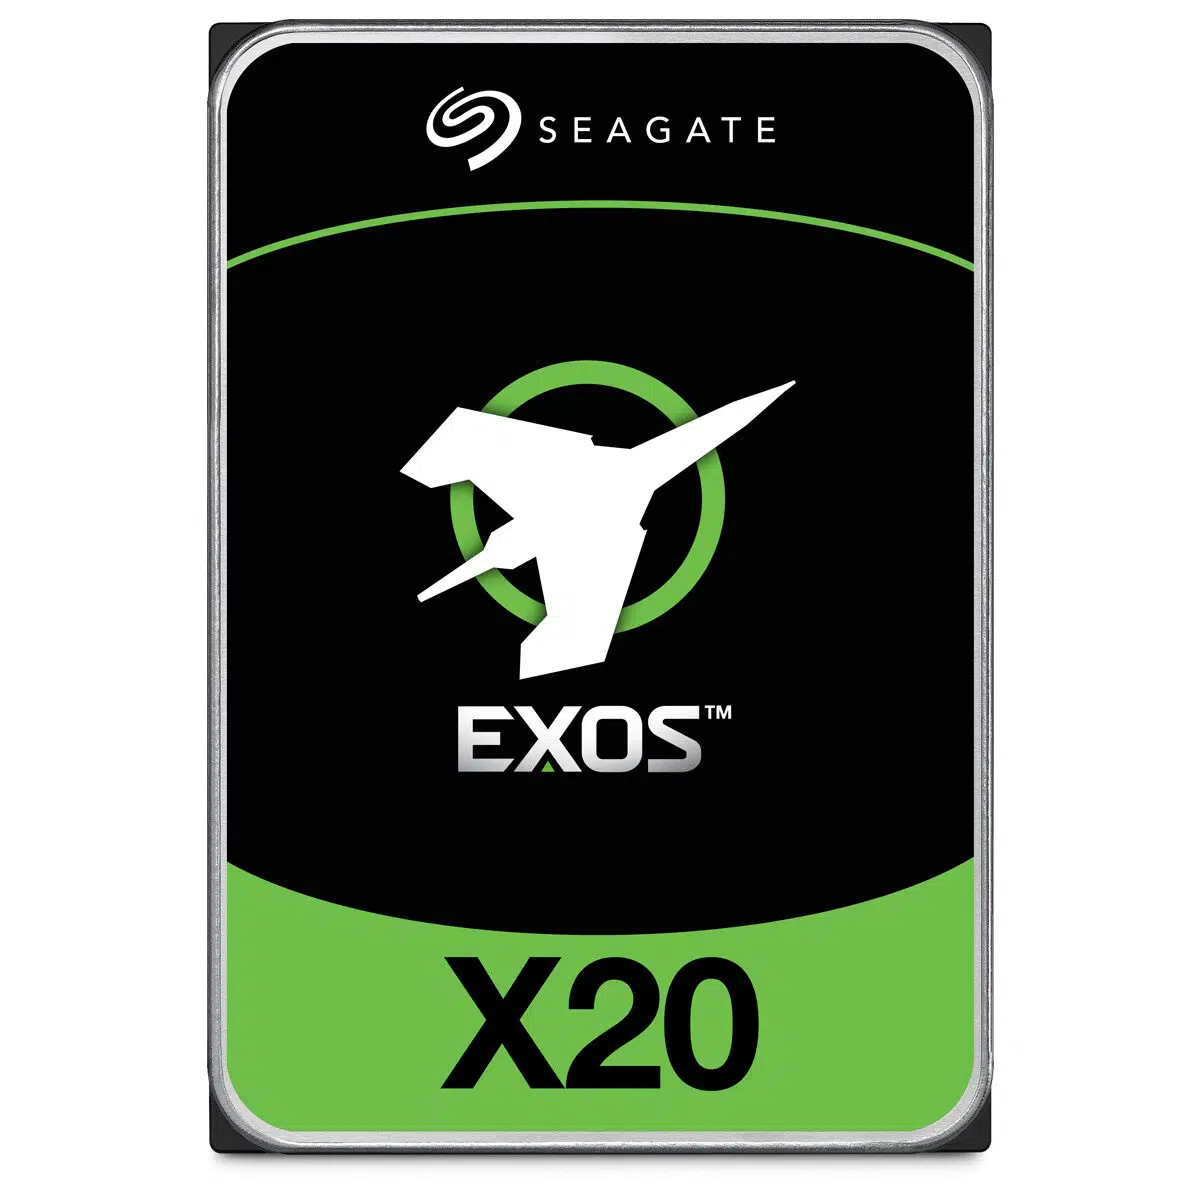 Seagate EXOS X20 Enterprise Hard Drive